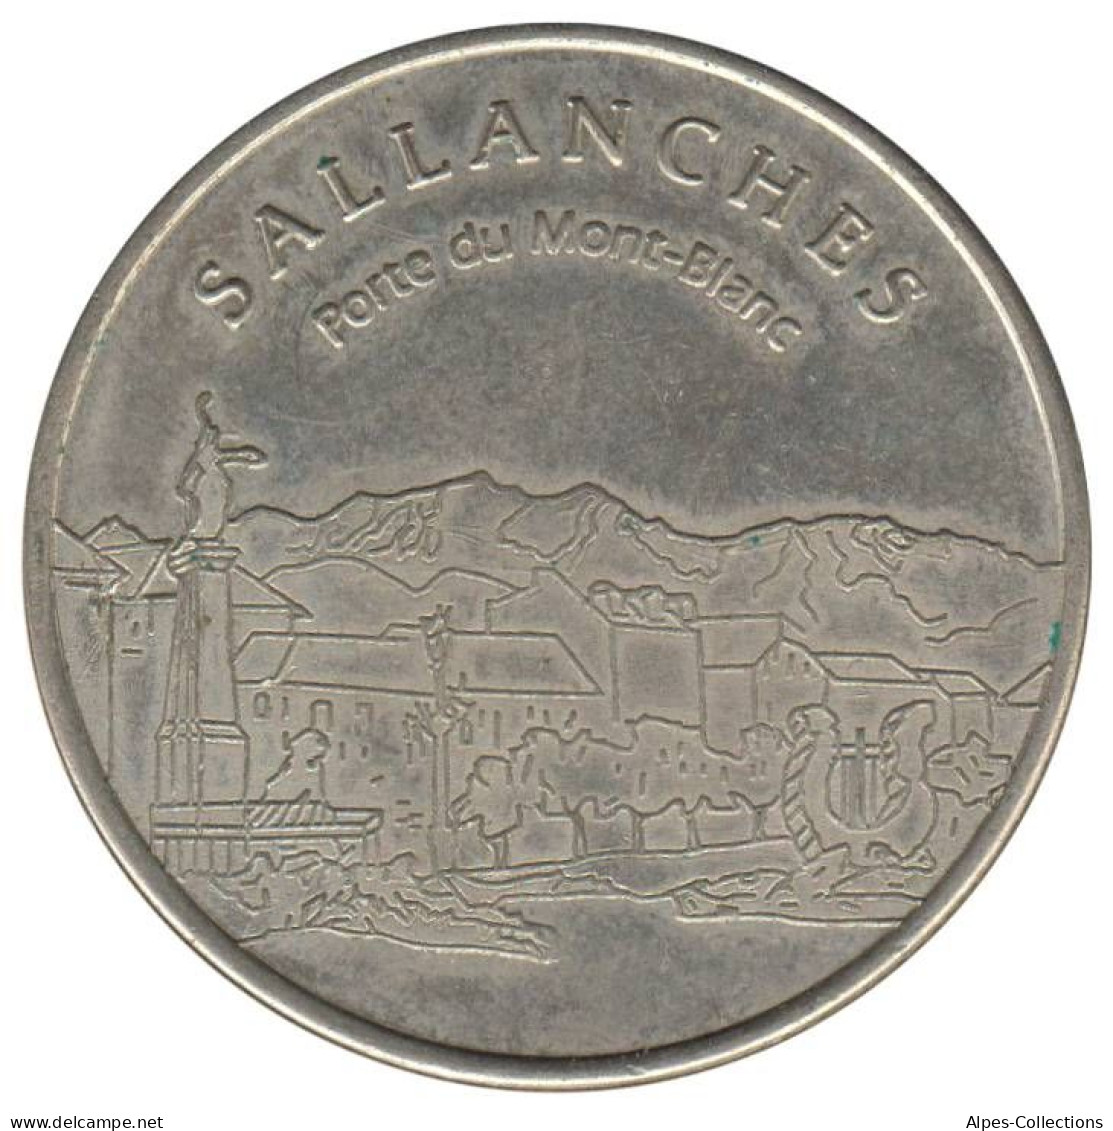 SALLANCHES - EU0020.2 - 2 EURO DES VILLES - Réf: NR - 1998 - Euros Of The Cities